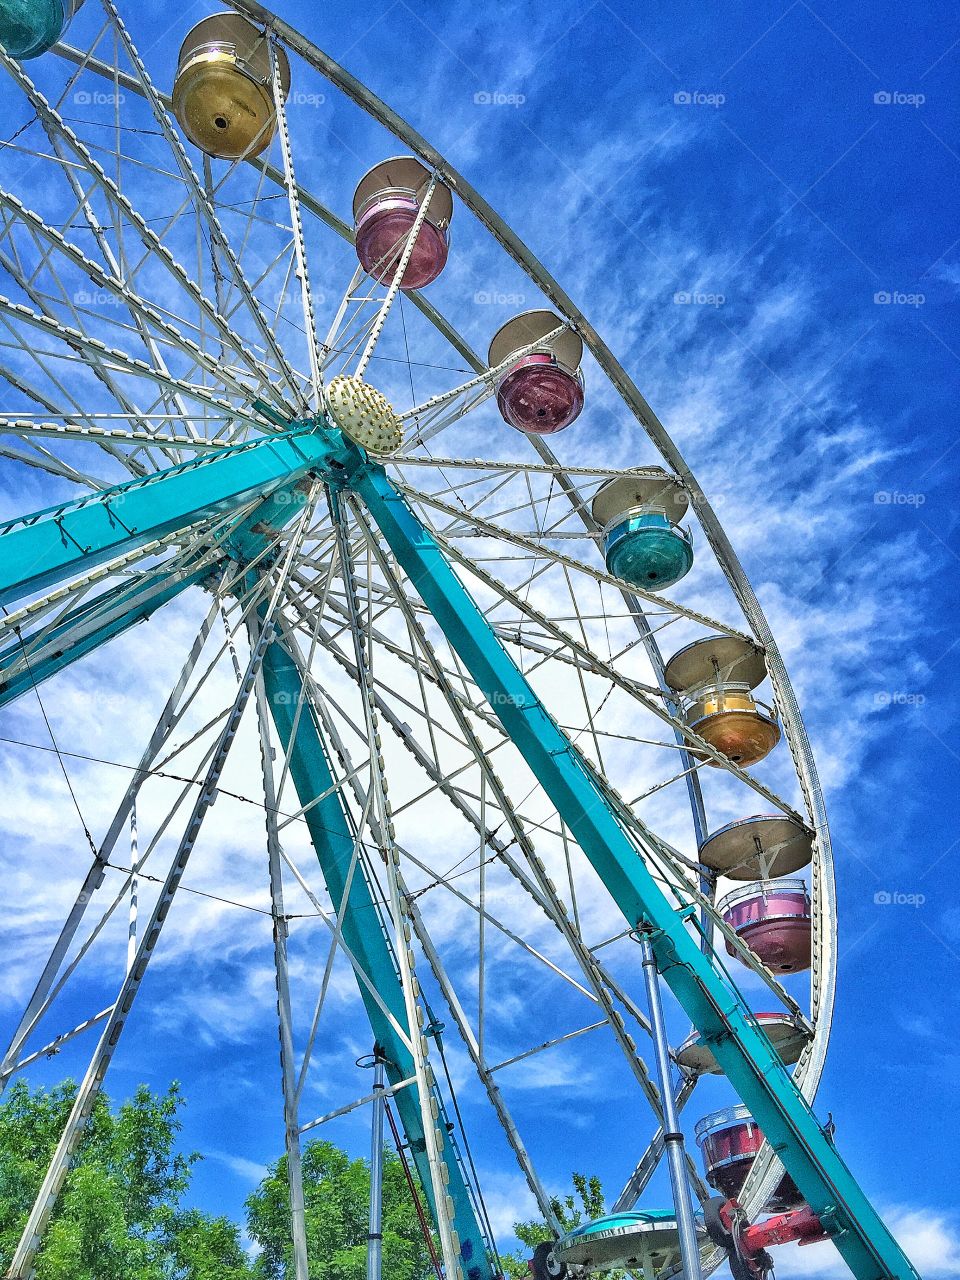 Ferris wheel. Ferris wheel ride at a local fair